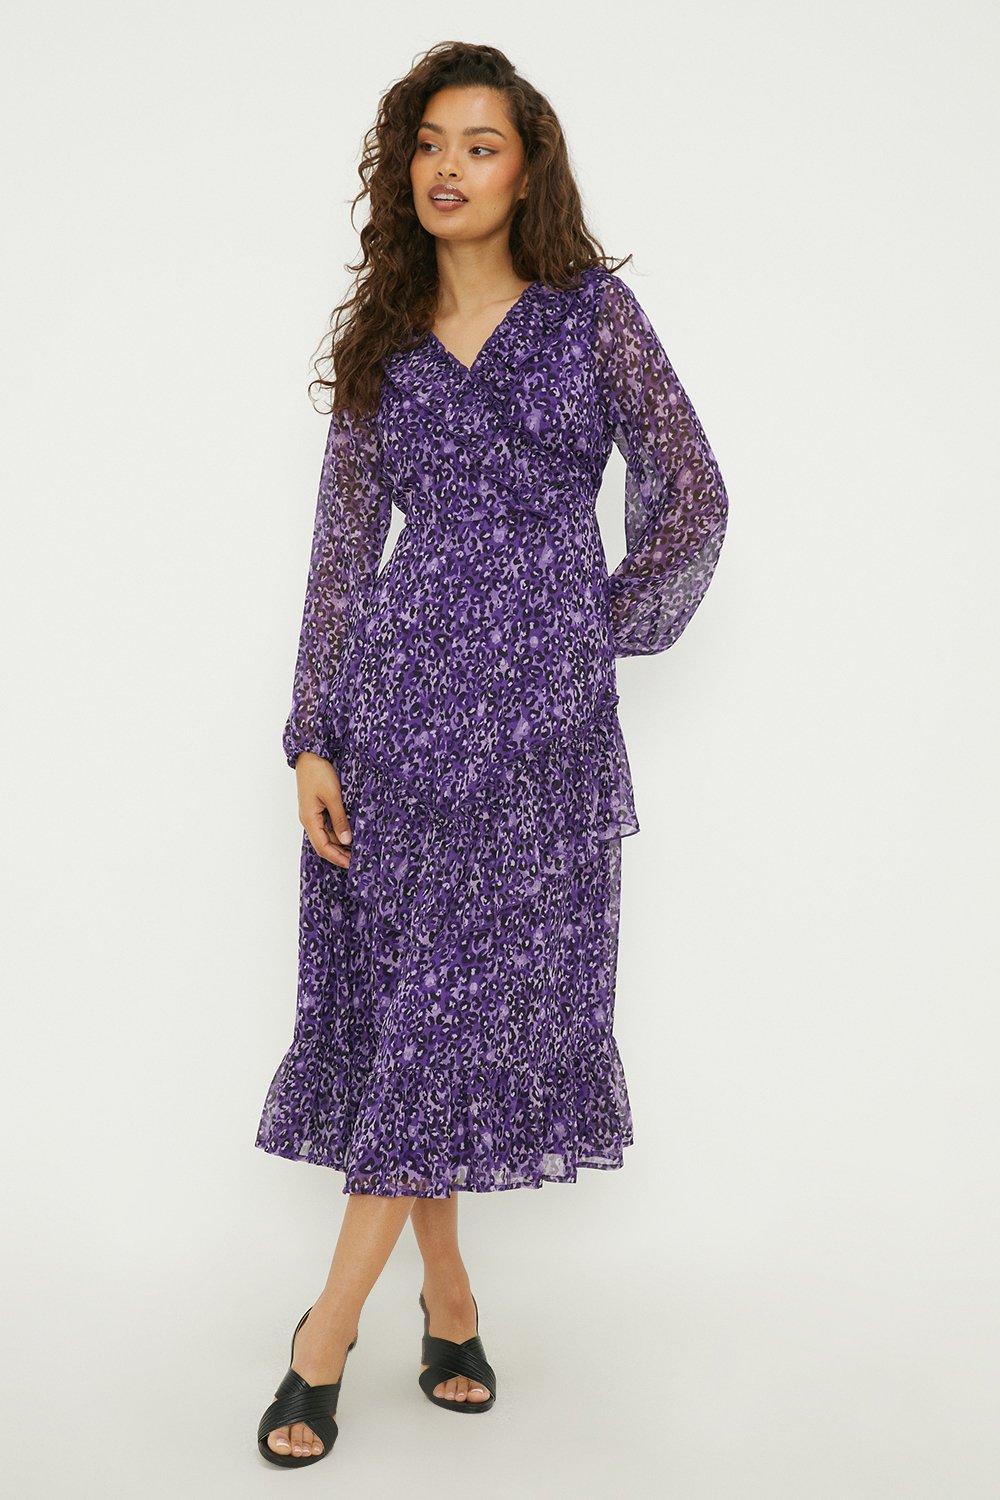 Petite Purple Animal Ruffle Chiffon Midaxi Dress